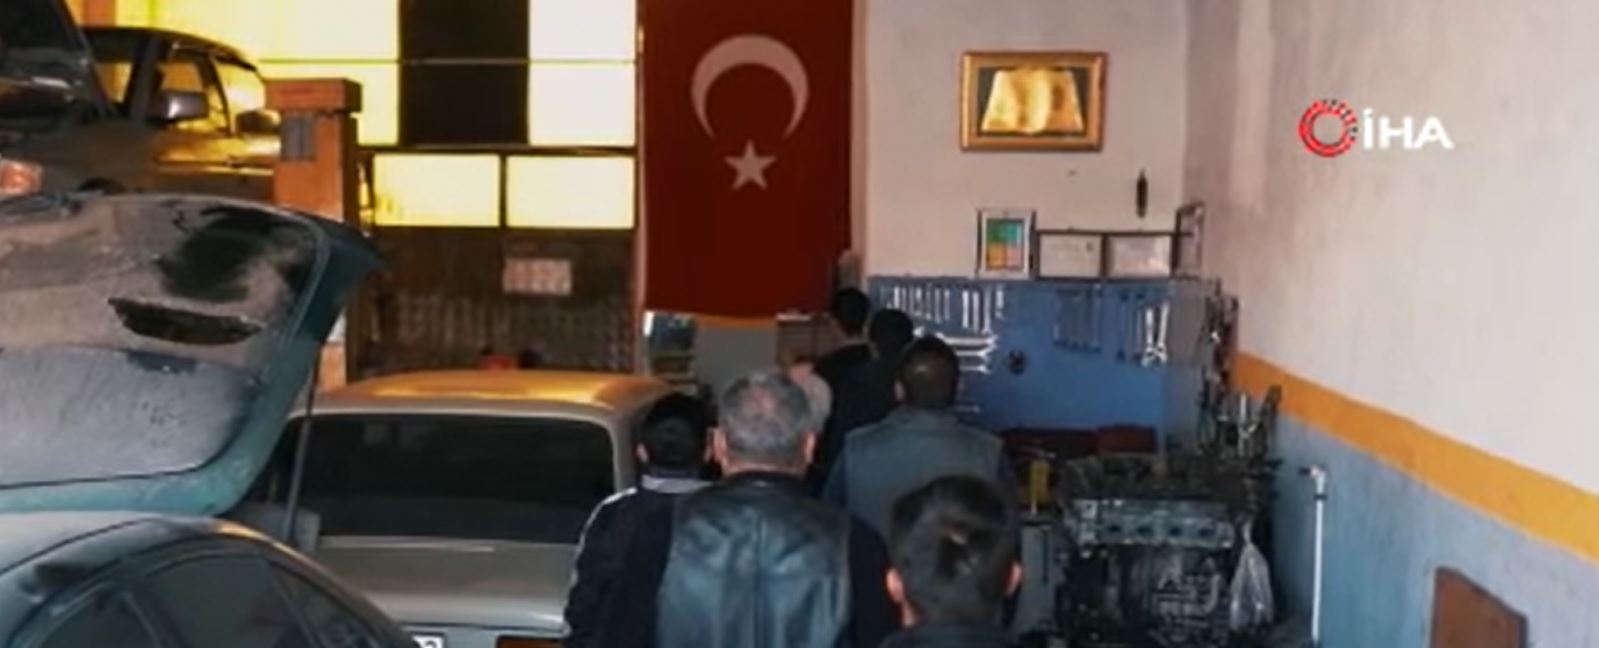 Manisa Alaşehir Belediyesi'nden 10 Kasım videosu